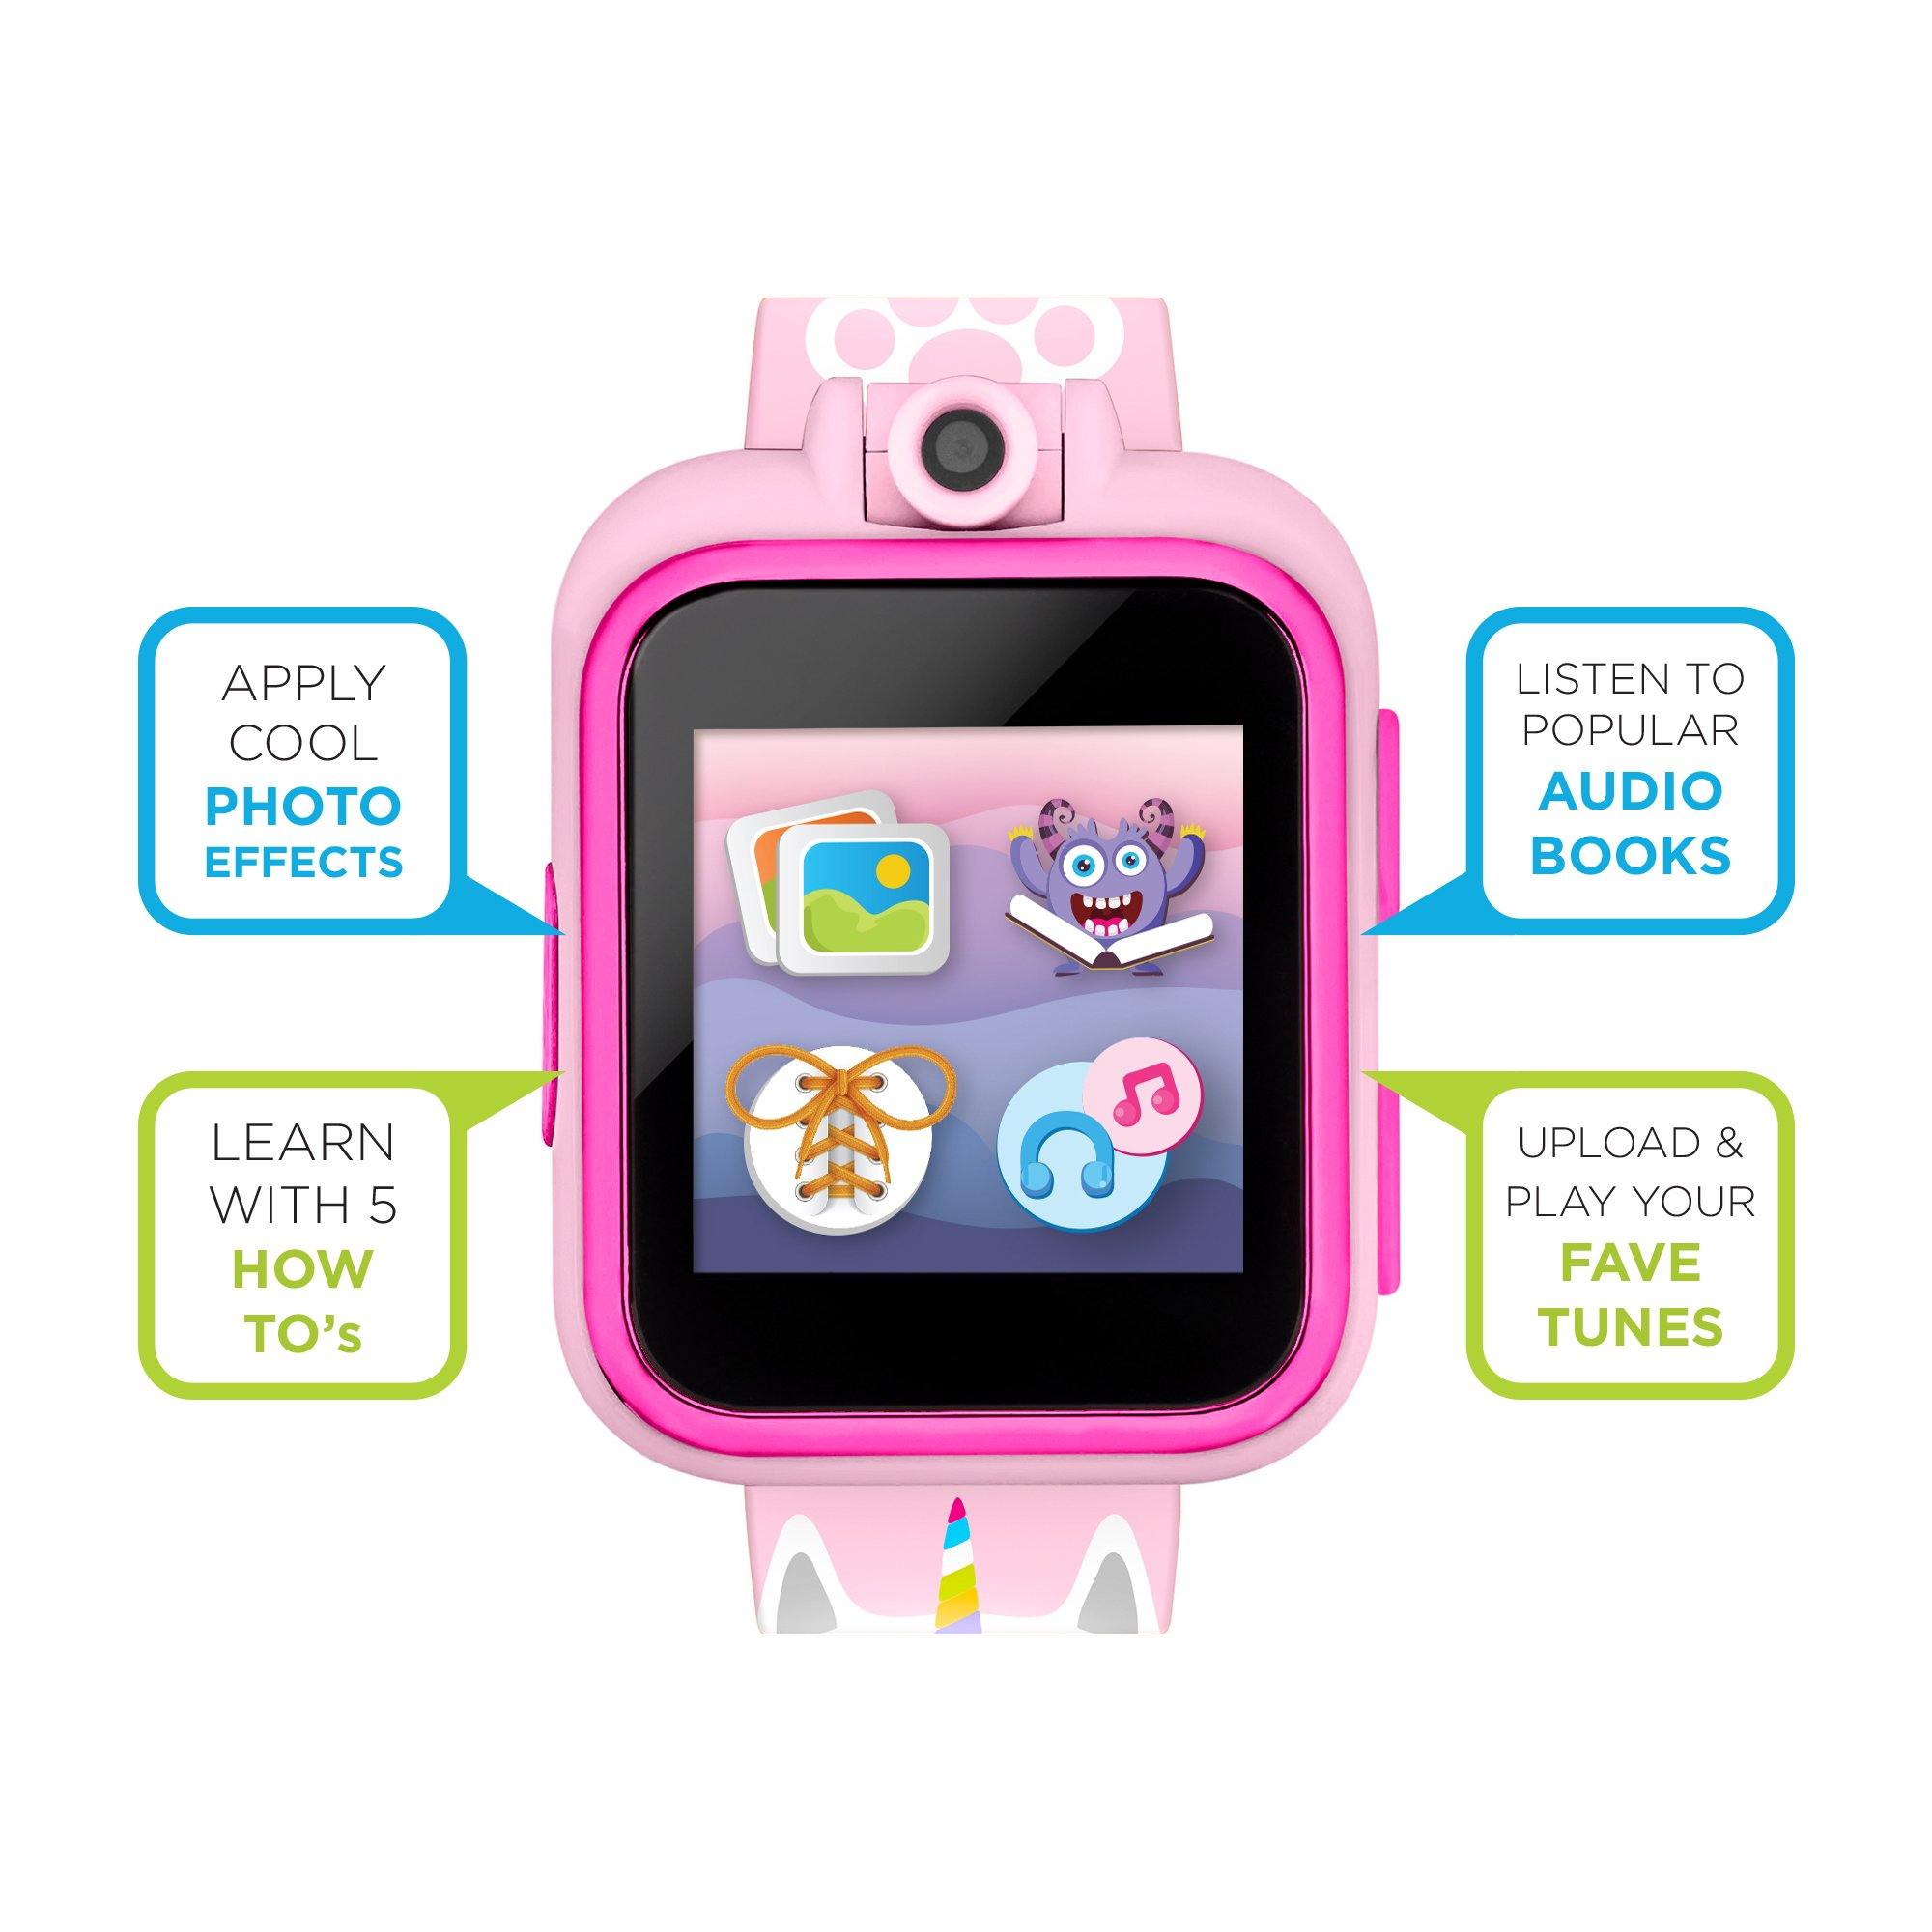 PlayZoom 2 Kids Smartwatch: Blush Unicorn Kitty affordable smart watch